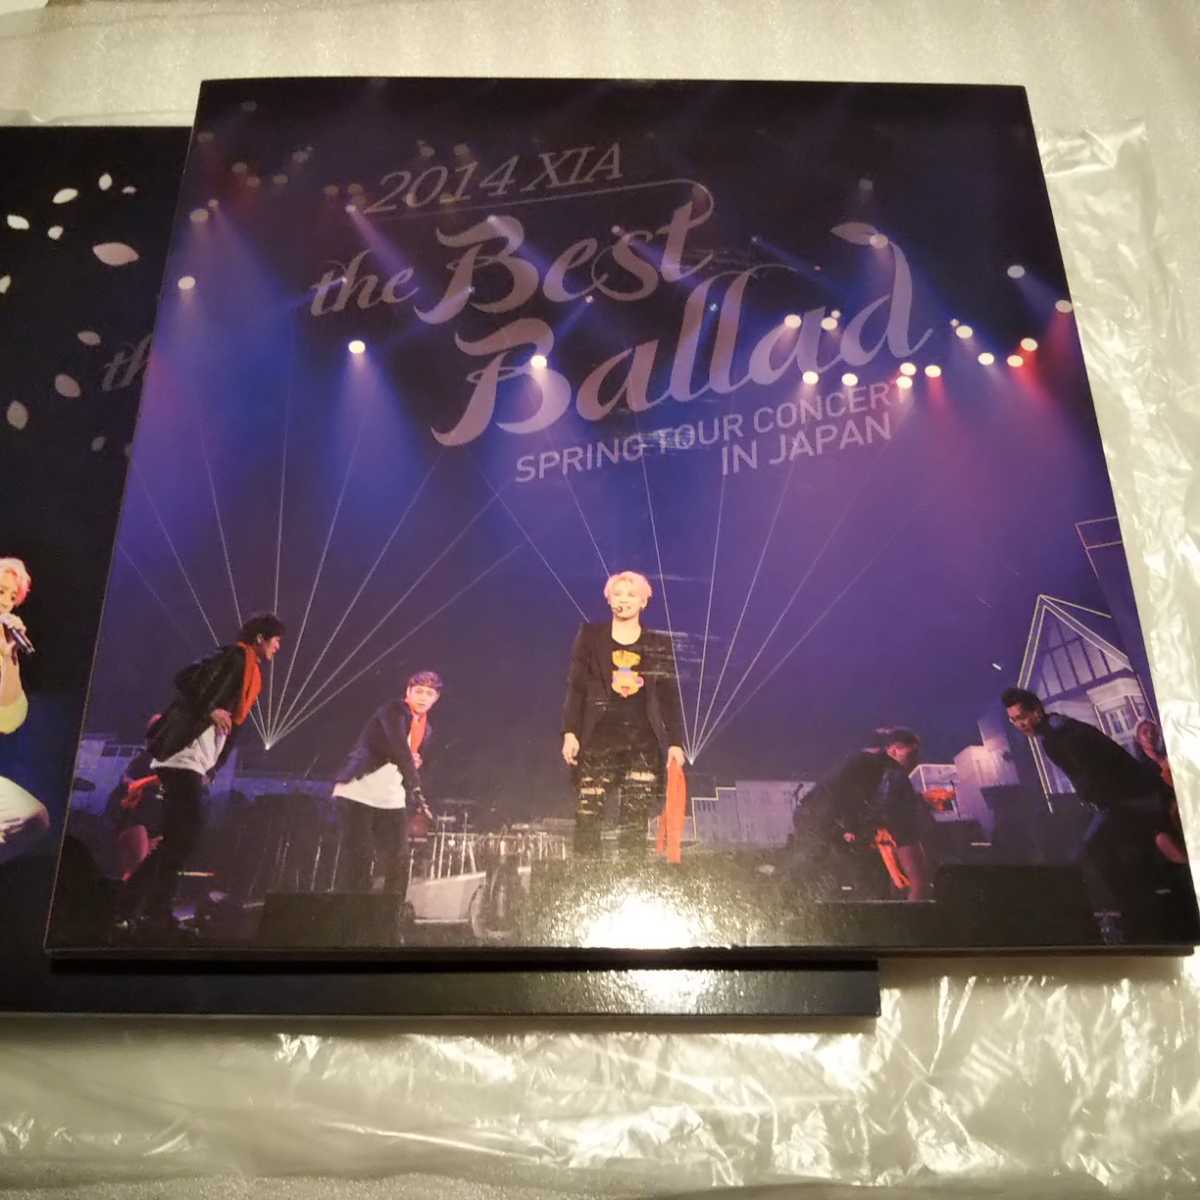 キム・ジュンス 2014 XIA the Best Ballad SPRING TOUR CONCERT IN JAPAN 日本版DVD ３枚組 写真集とピンナップ付き JYJ 東方神起_画像5